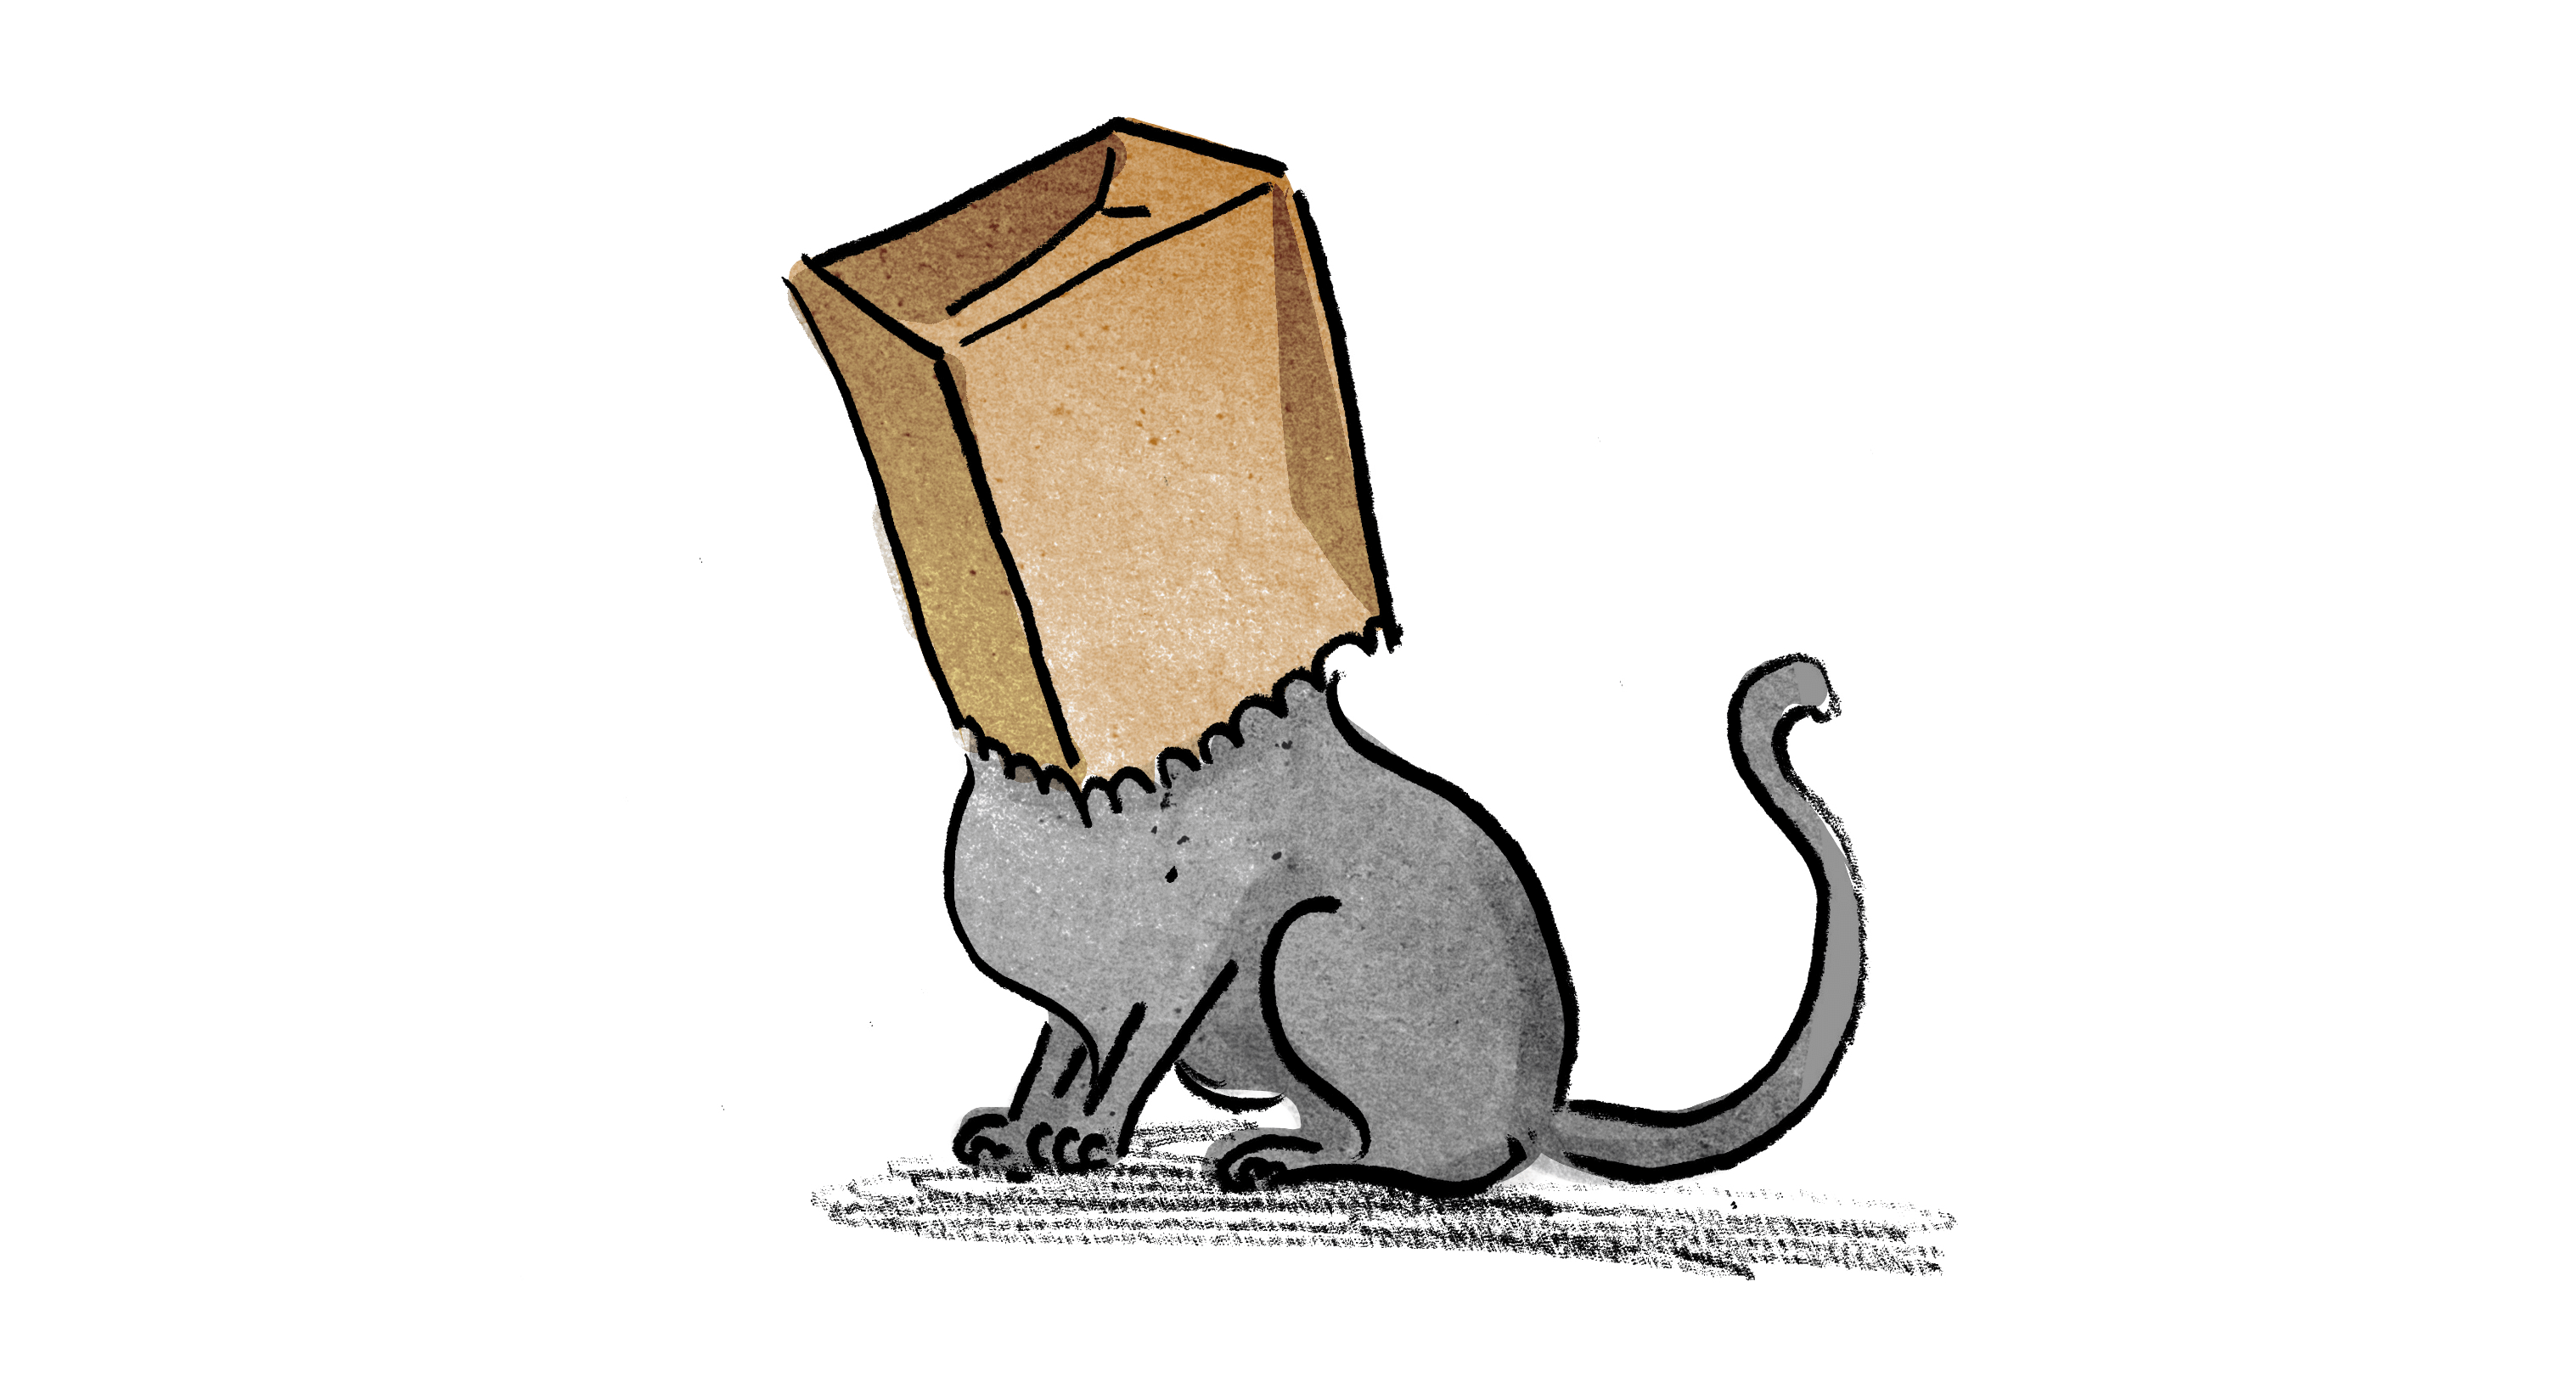 A cat looking inside a paper bag